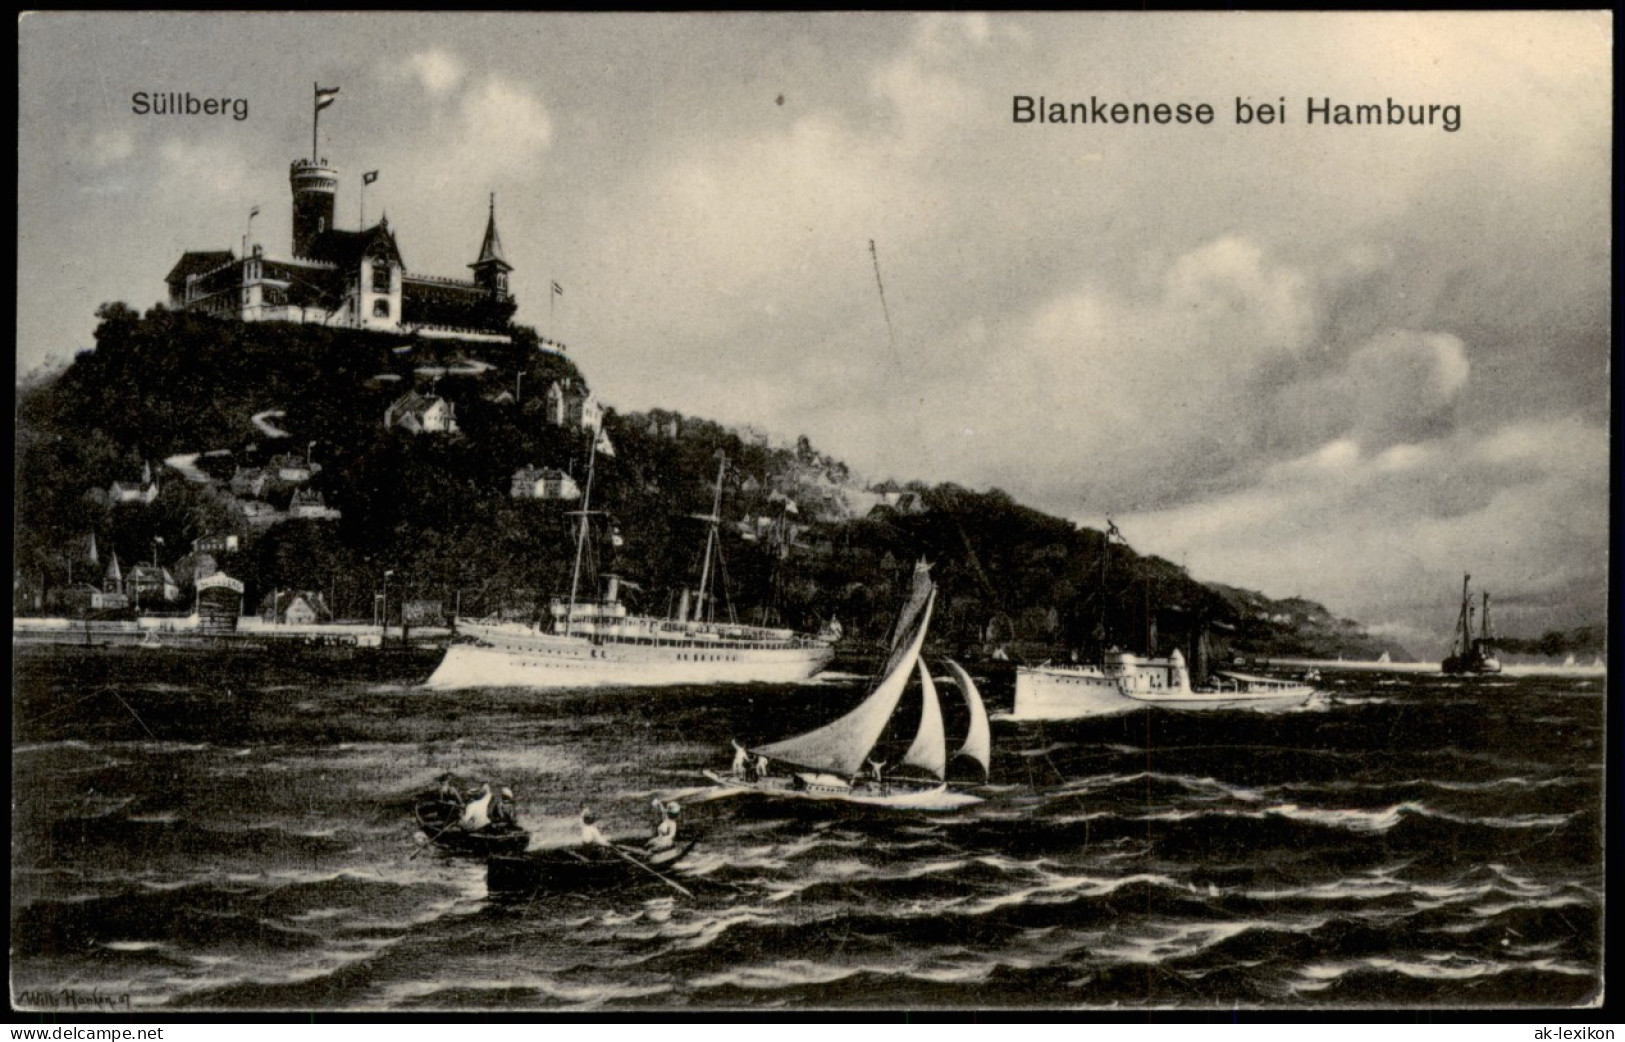 Blankenese-Hamburg Süllberg, Dampfer, Kriegsschiff - Wolkenstimmungsbild 1908 - Blankenese